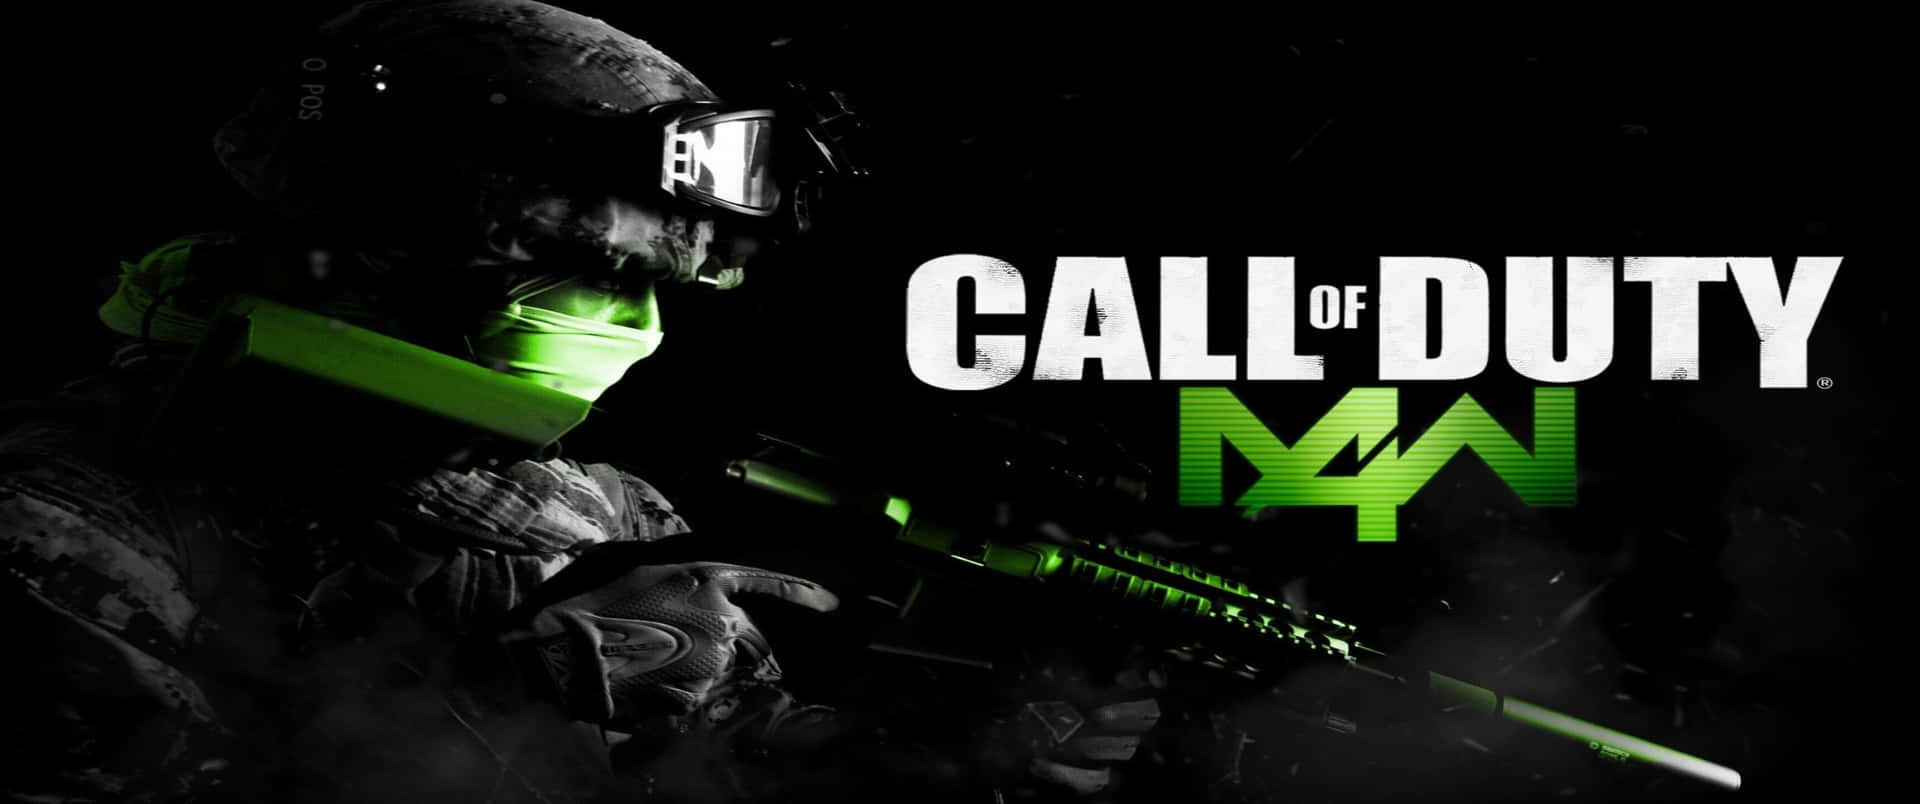 Títuloen Verde Neón 3440x1440p Fondo De Pantalla De Call Of Duty Modern Warfare